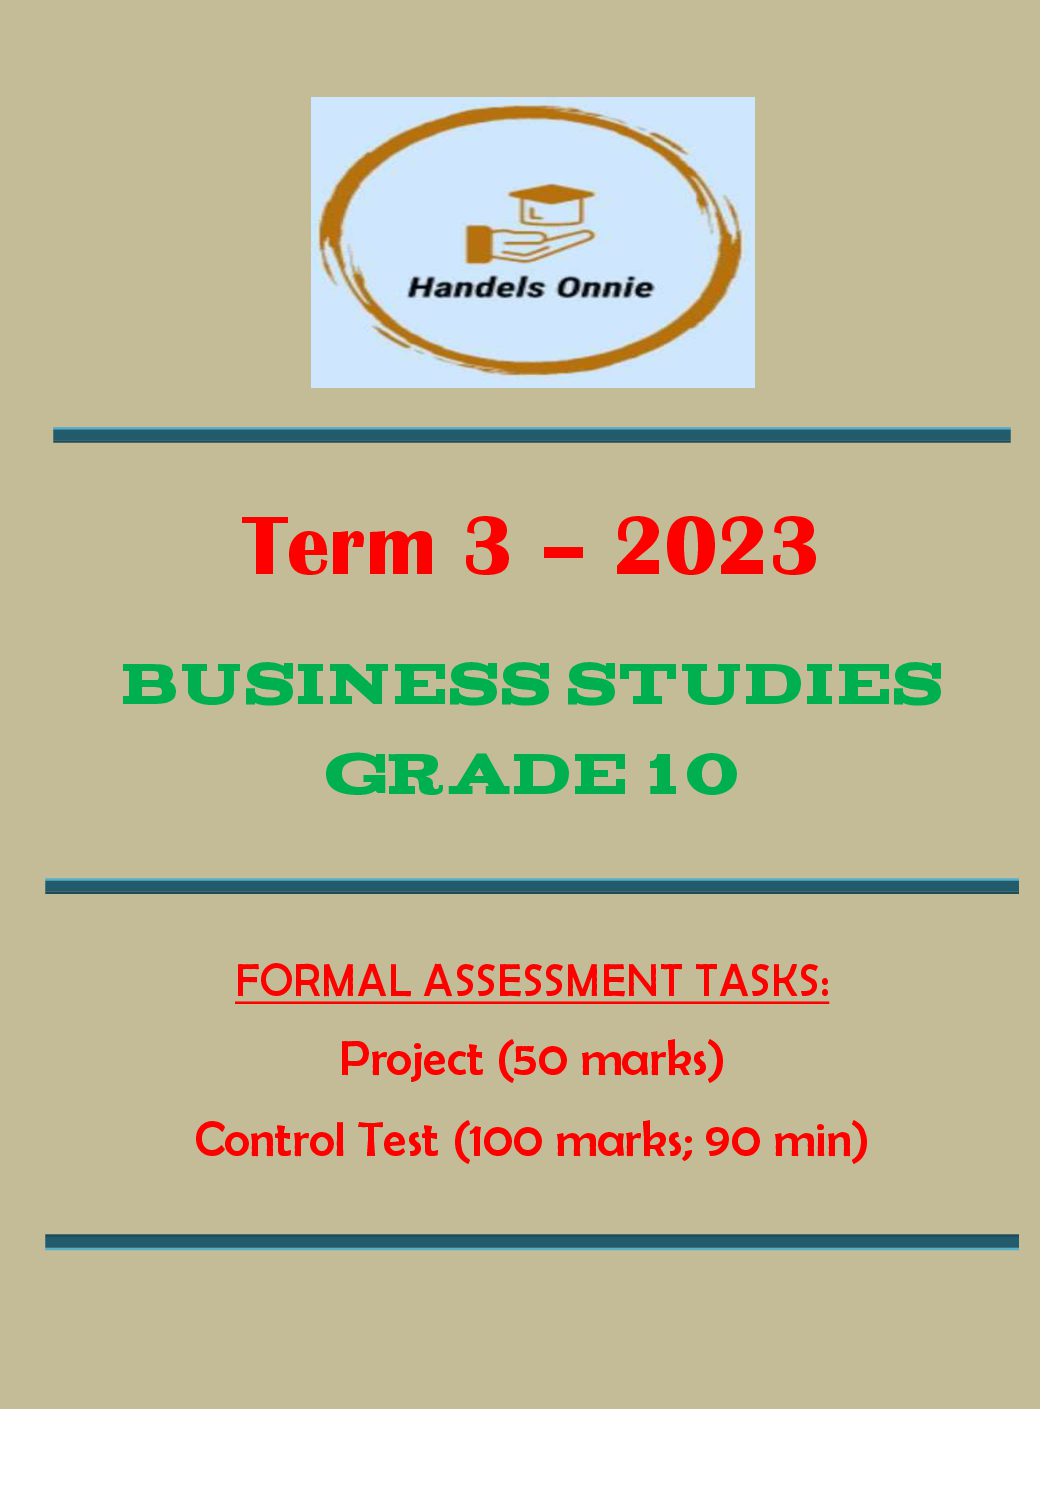 grade 10 business studies assignment term 1